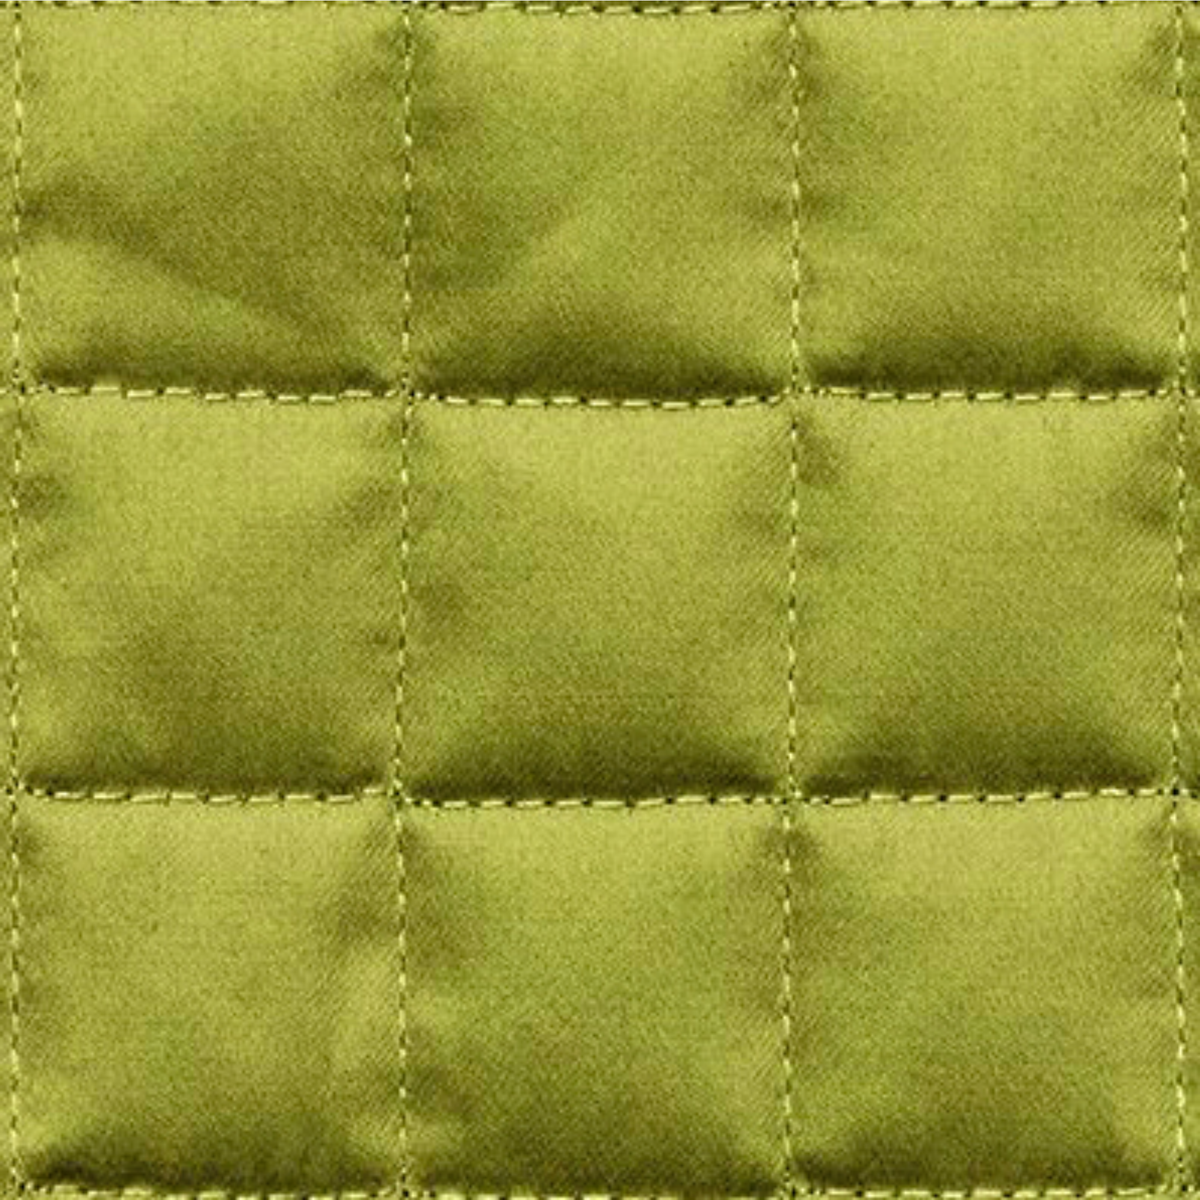 Fabric Closeup of Signoria Masaccio Bedding in Moss Green Color